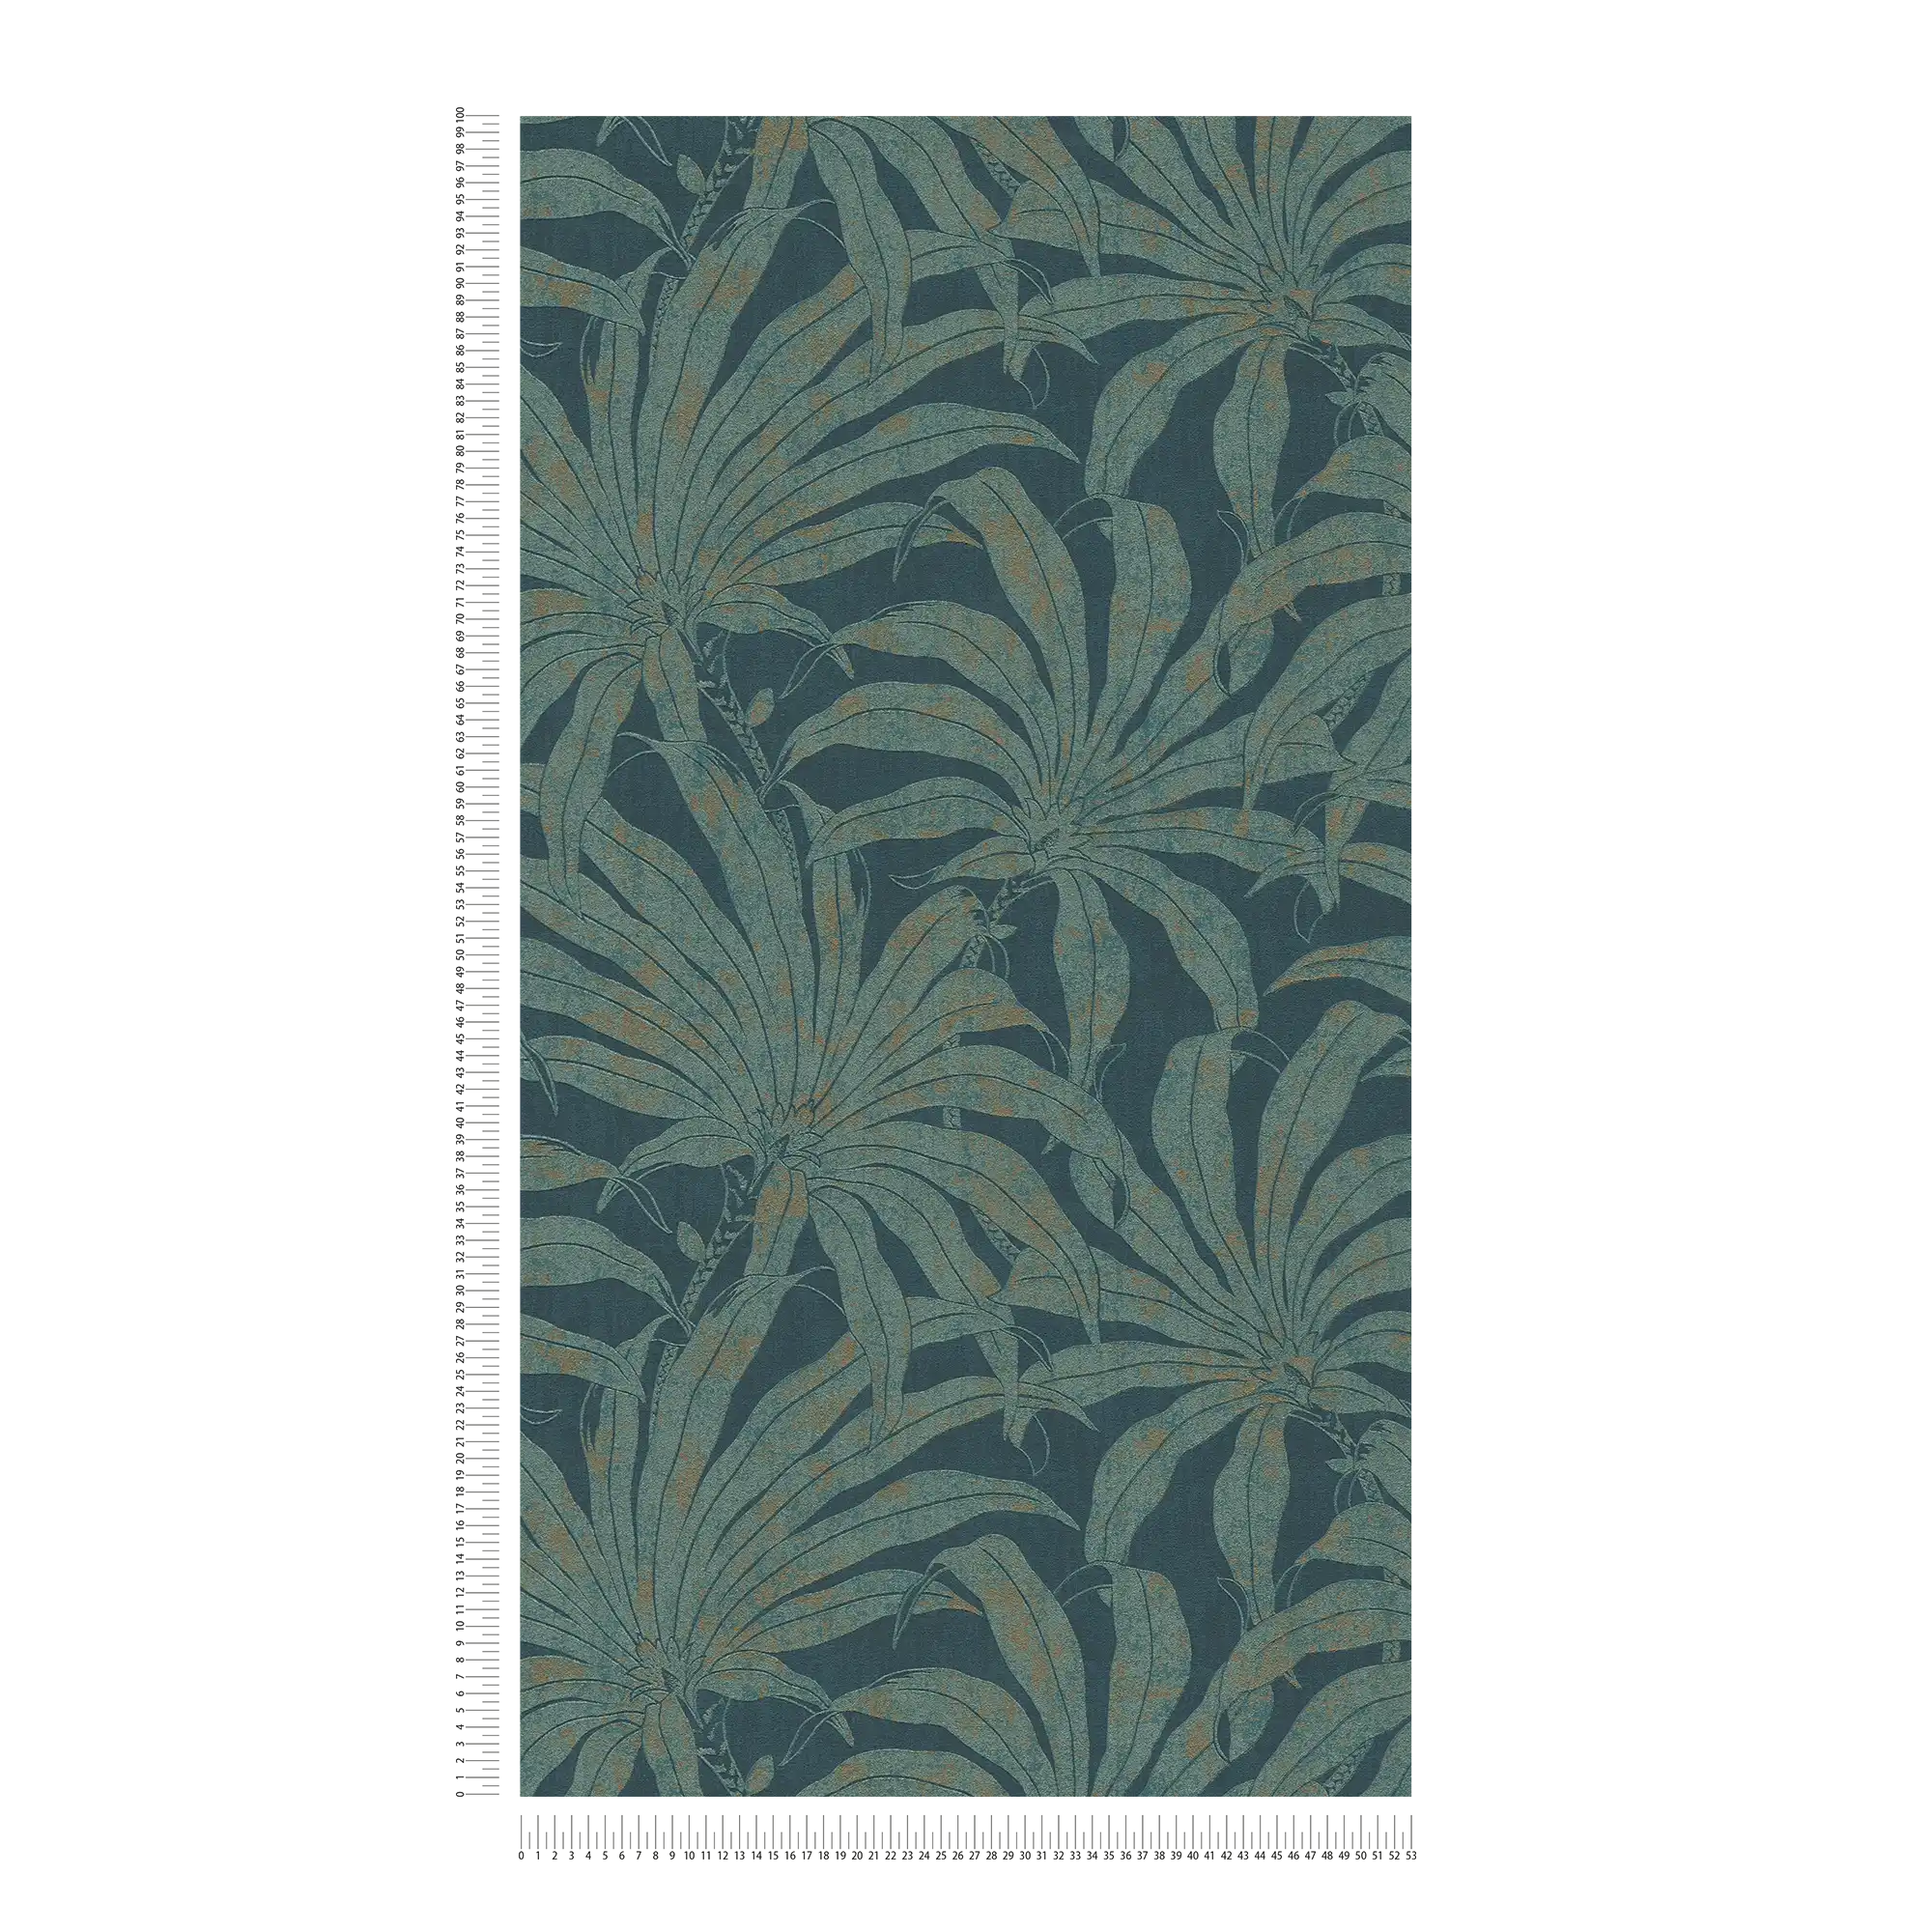             Florale Mustertapete mit botanischen Dschungelblättern – Petrol, Gold, blau
        